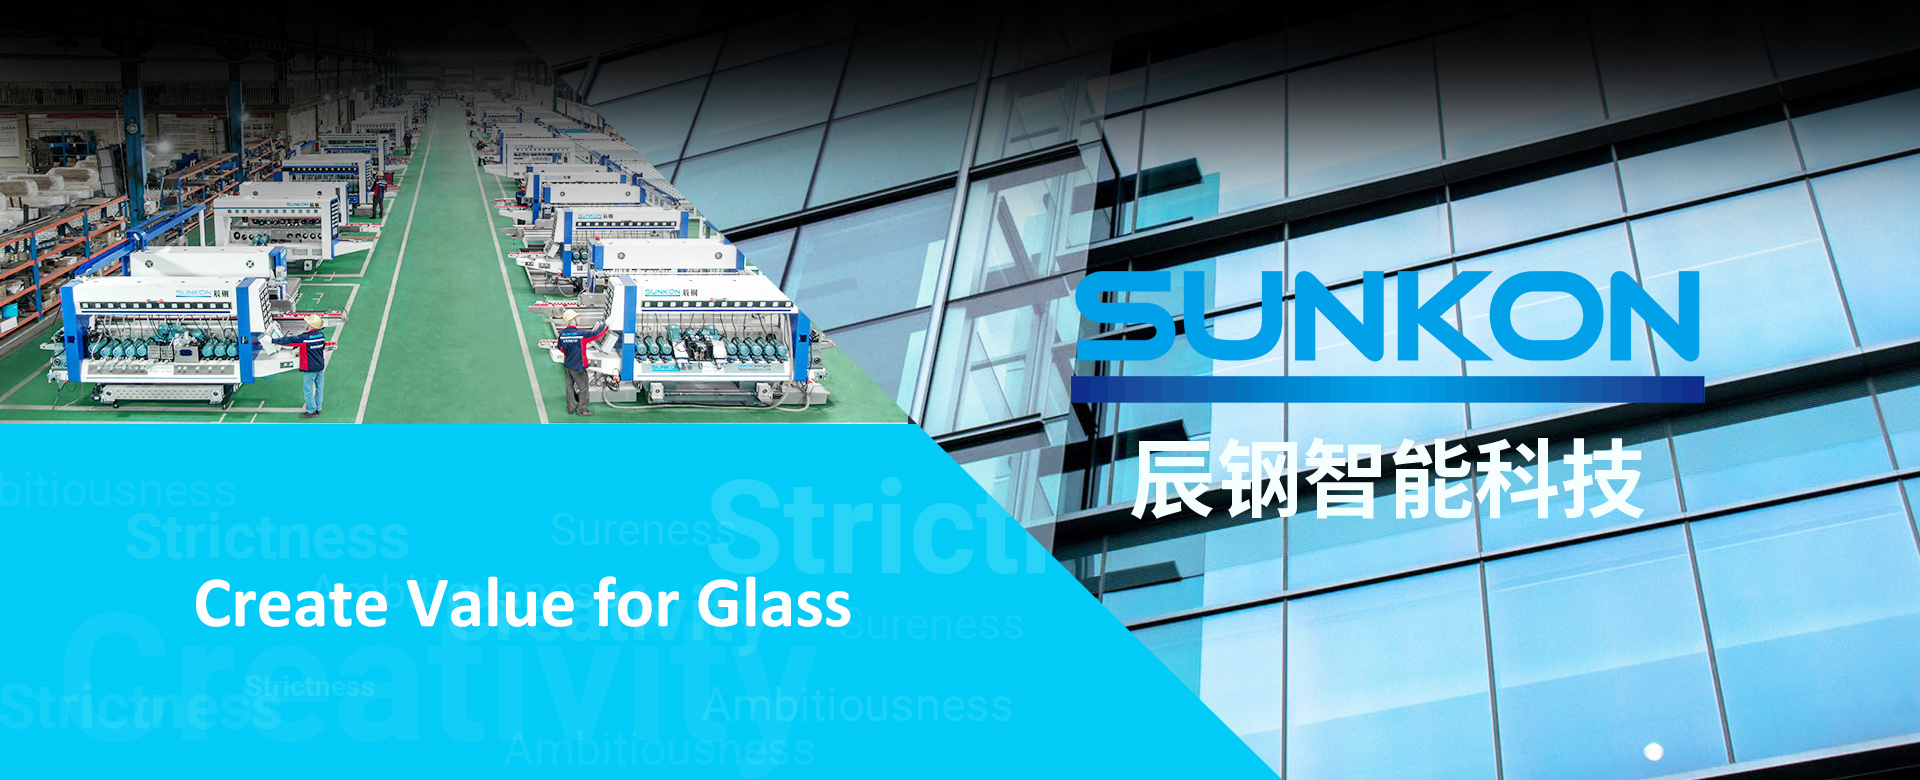 SUNKON glassmaskin - banner